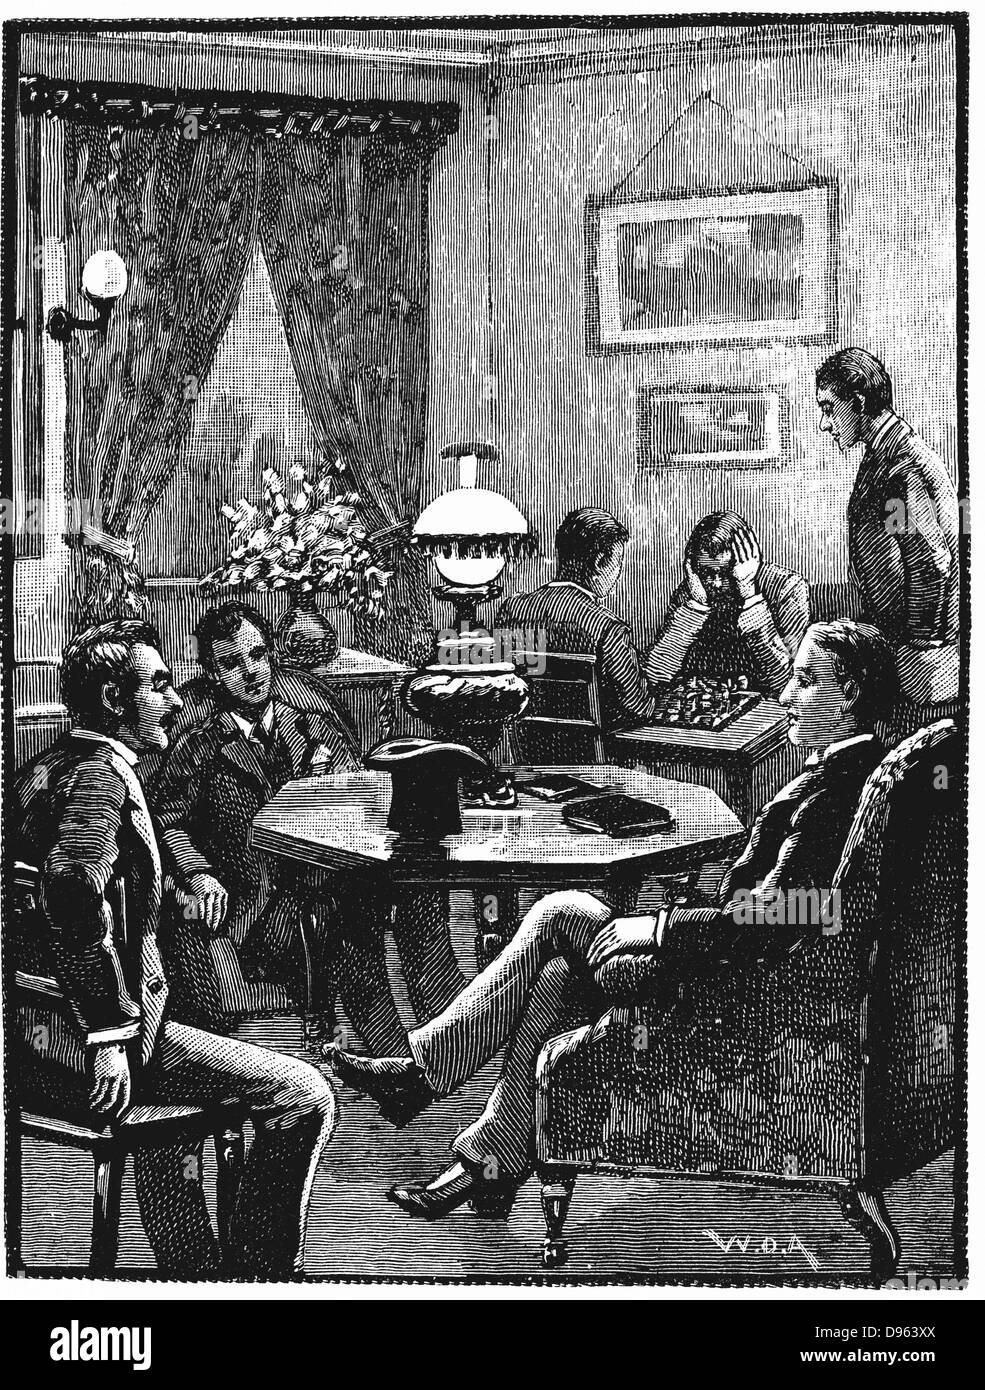 Salon de Young Men's Christian Association (YMCA) Exeter Hall, Londres, où les jeunes hommes pouvaient se reposer et recevoir des visiteurs. La gravure sur bois, 1887 Banque D'Images